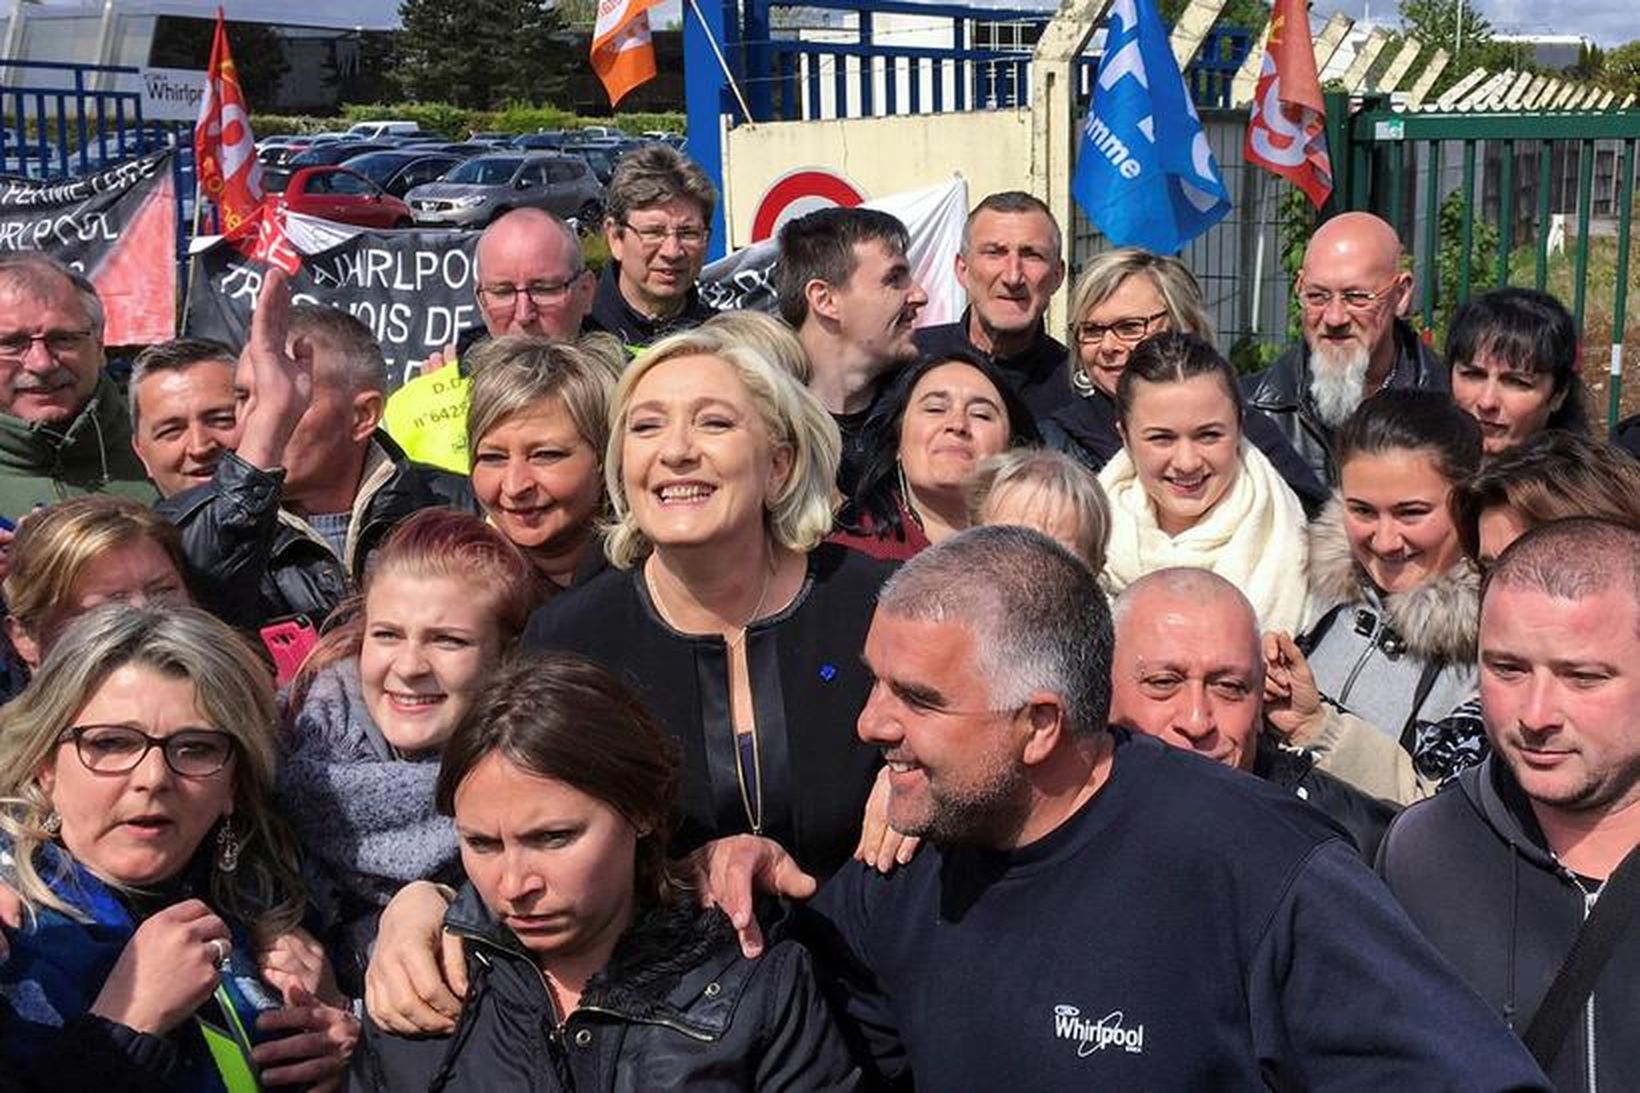 Marine Le Pen, forsetaframbjóðandi frönsku Þjóðfylkingarinnar, með verkafólki Whirpool verksmiðjunnar.